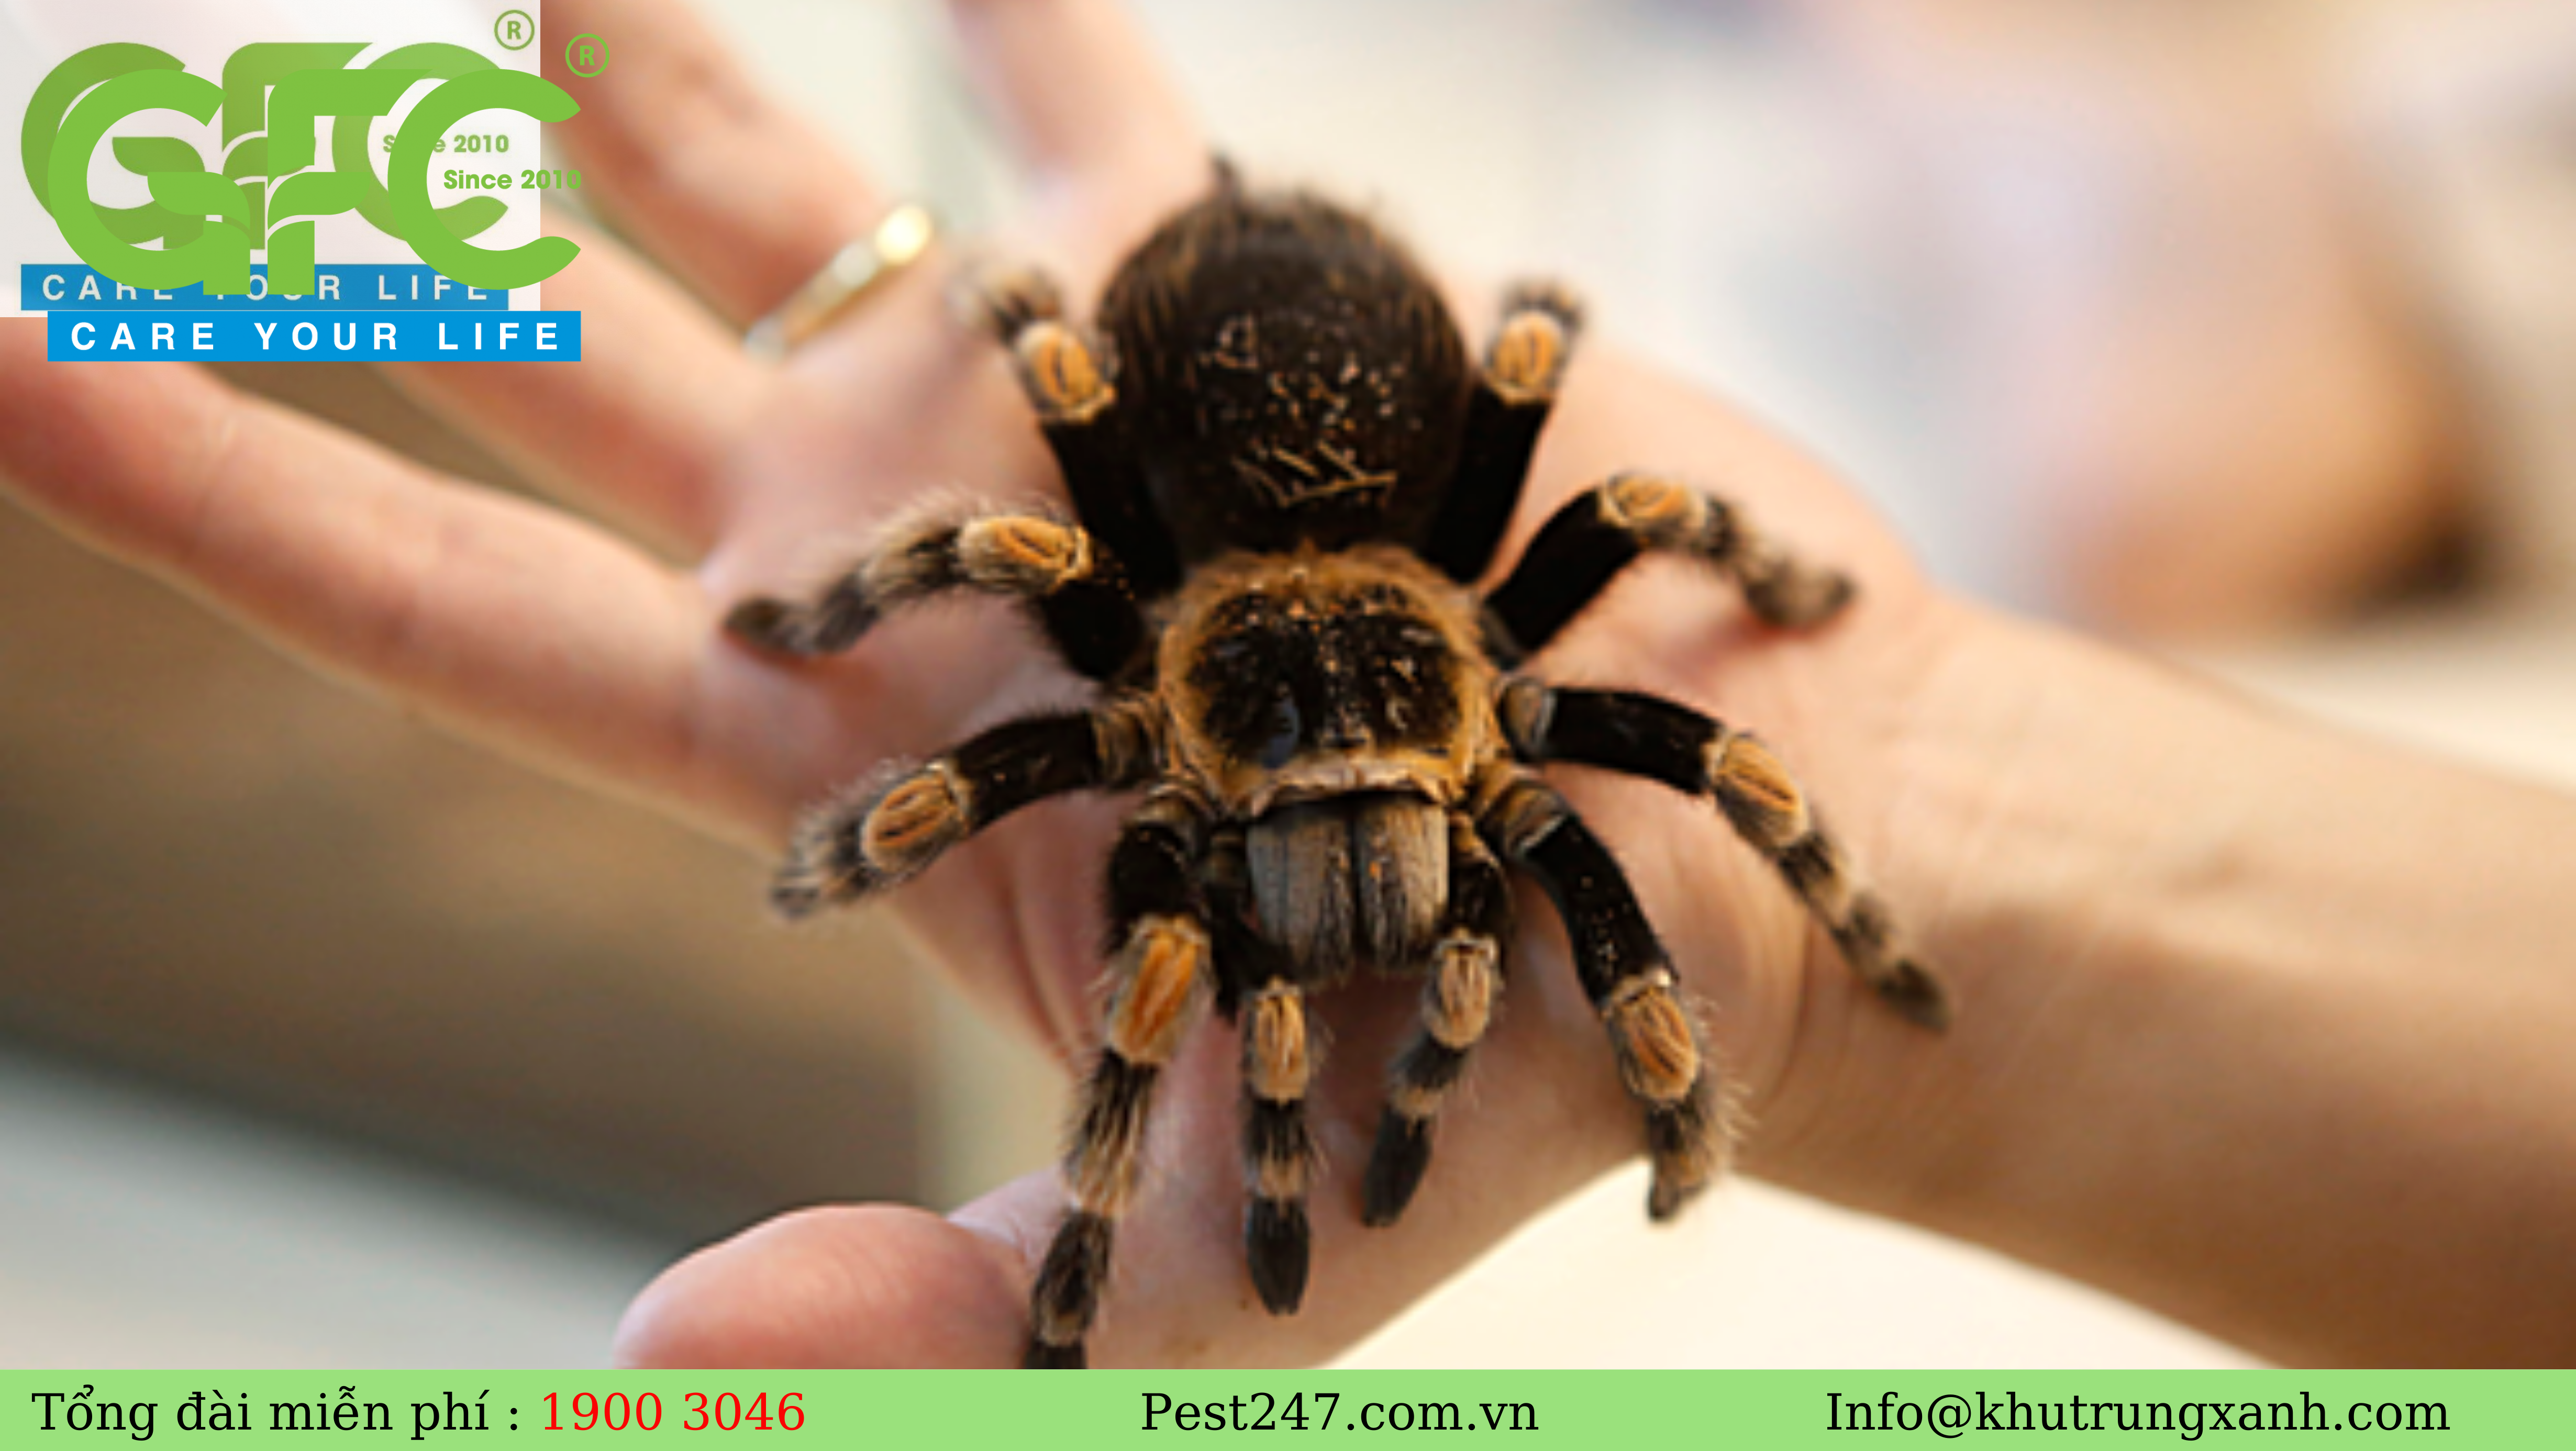 REVIEW tất cả Các loài nhện thường xuyên xuất hiện tại nước ta